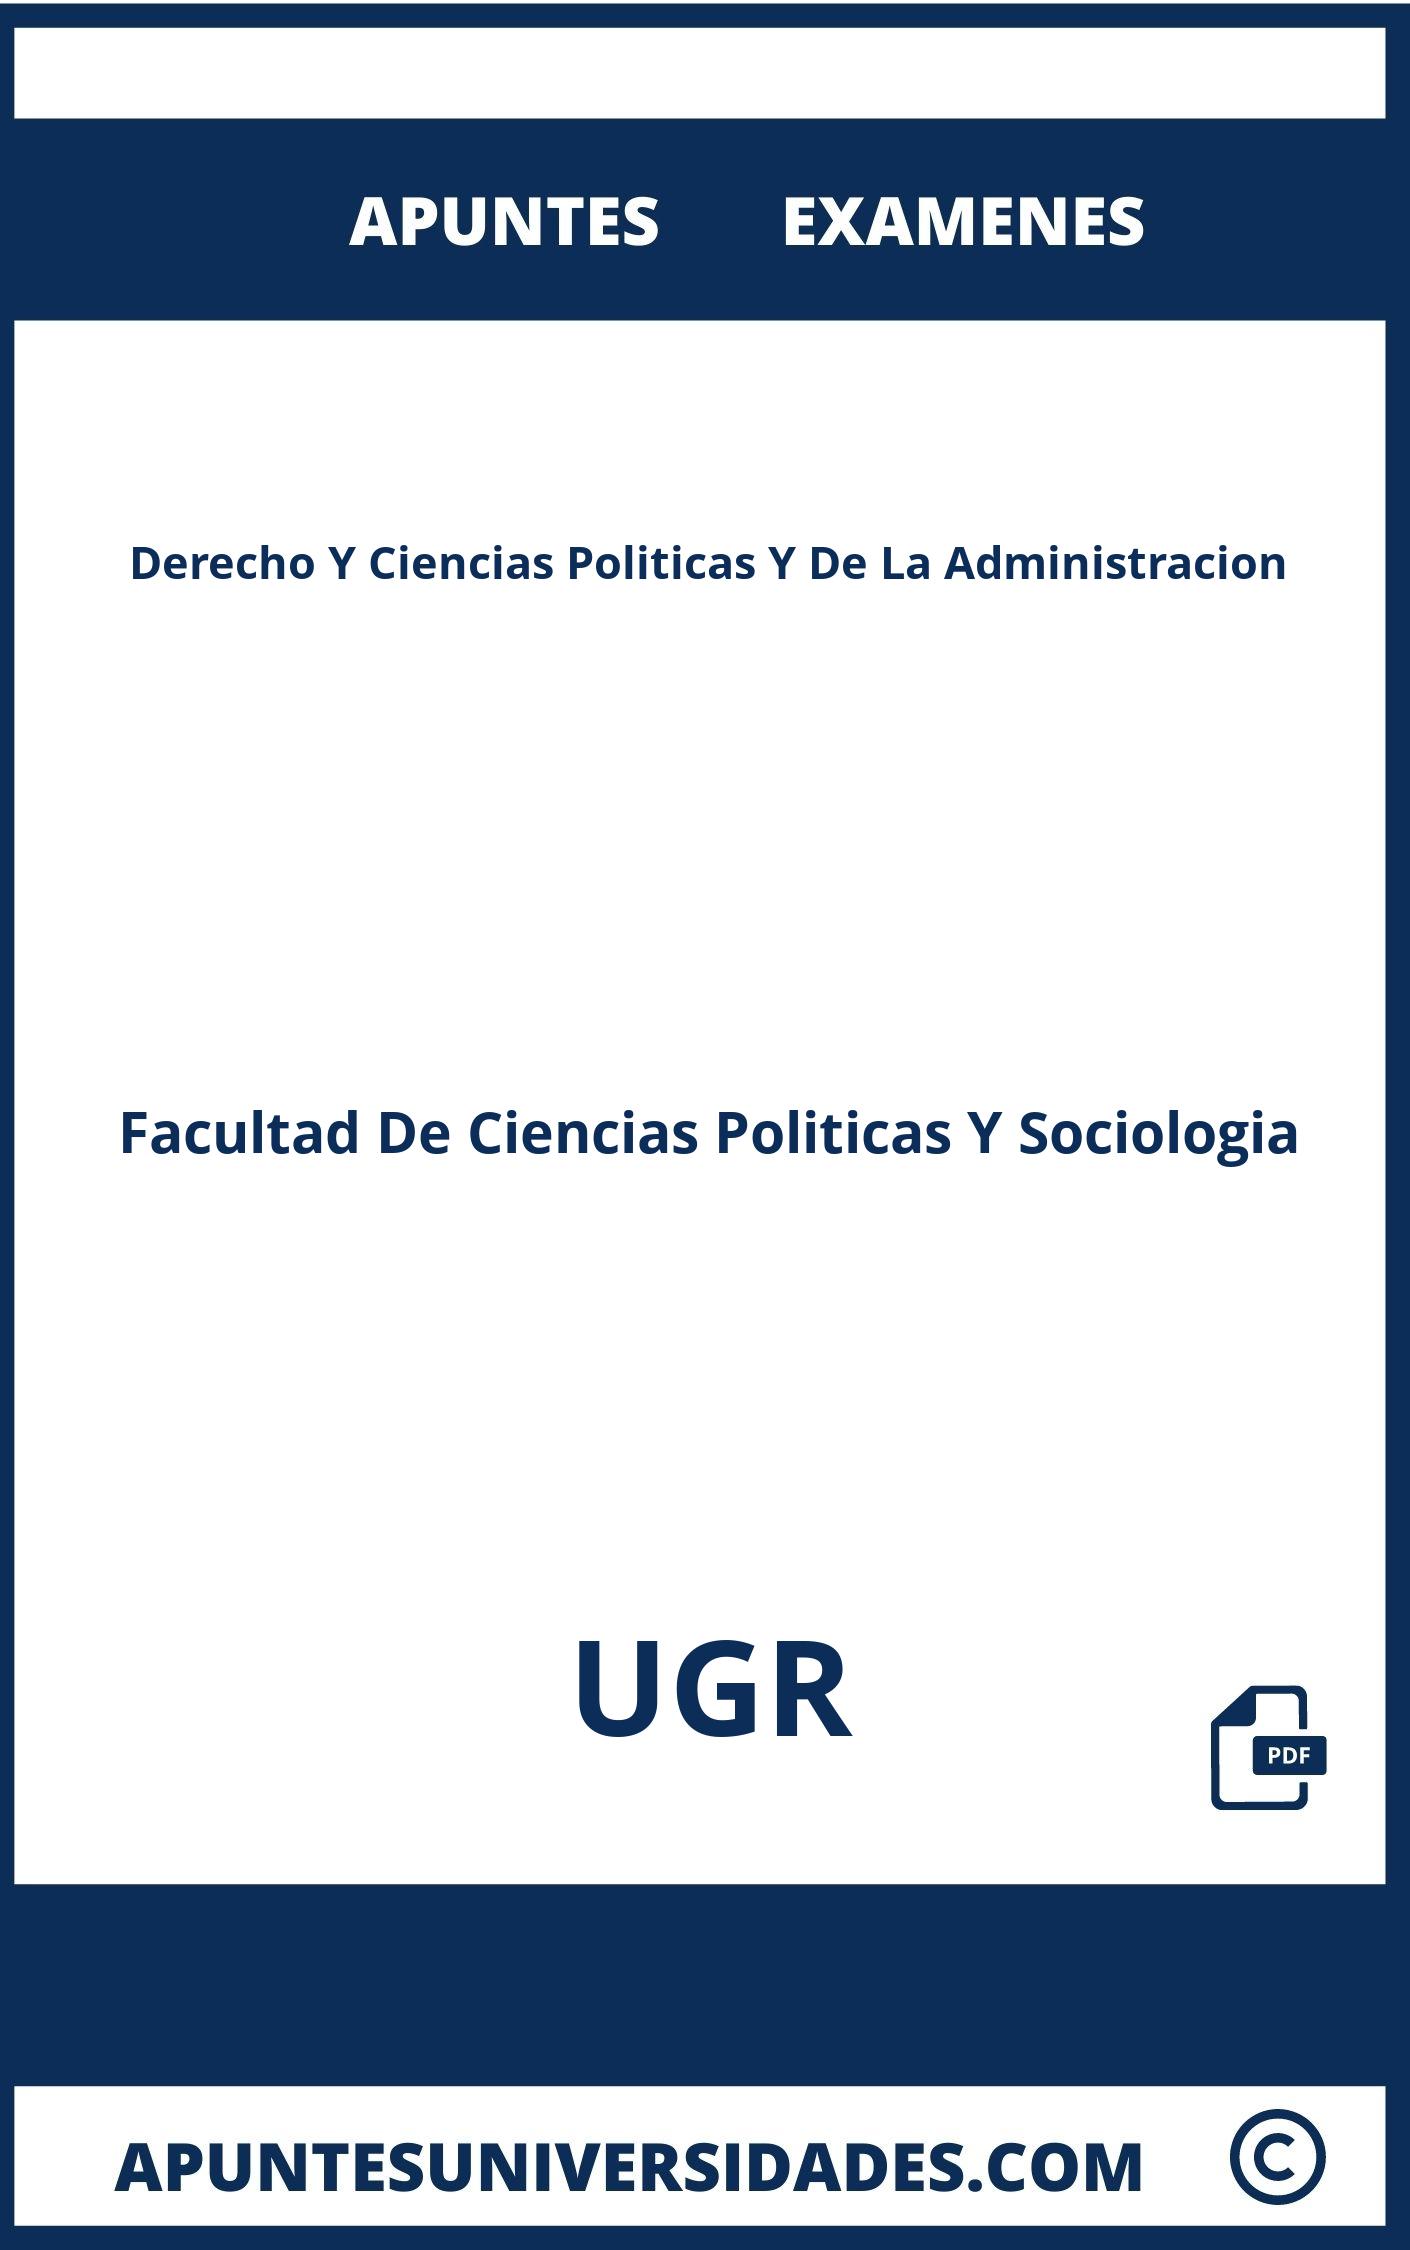 Derecho Y Ciencias Politicas Y De La Administracion UGR Examenes Apuntes